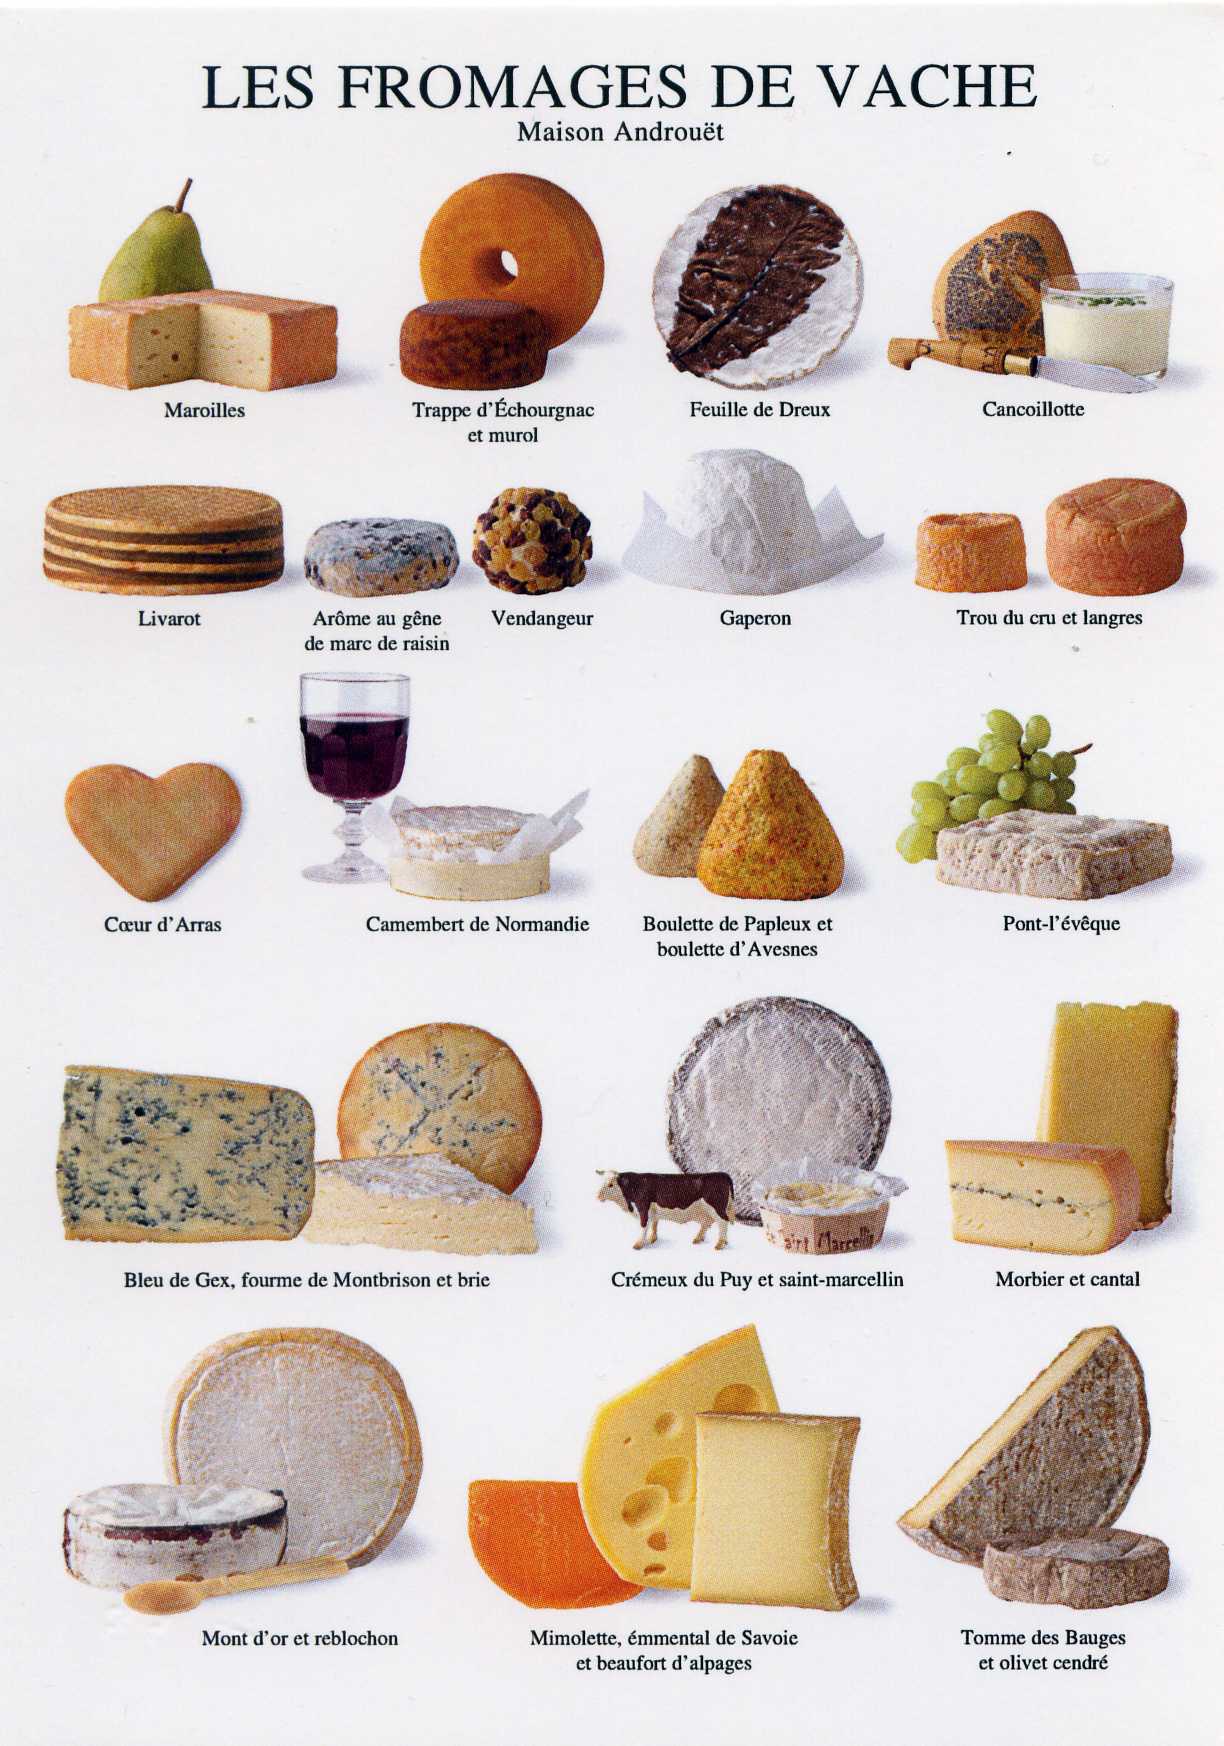 Швейцарский сыр - виды швейцарских сыров, описания, фото